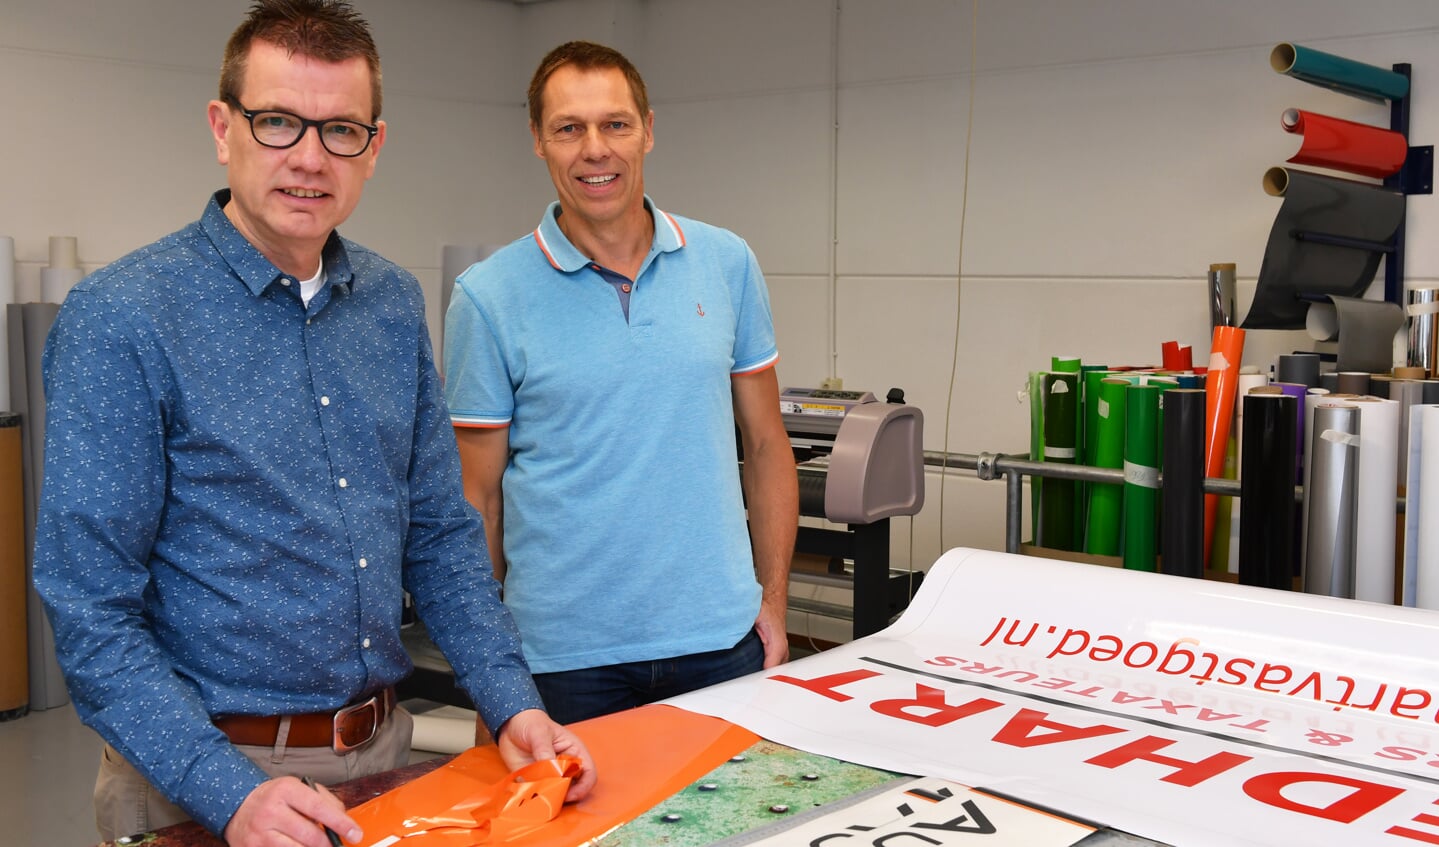 Wim Kersbergen en Peter van Eeden en de printers van RoyalPrint. Foto: René Zoetemelk